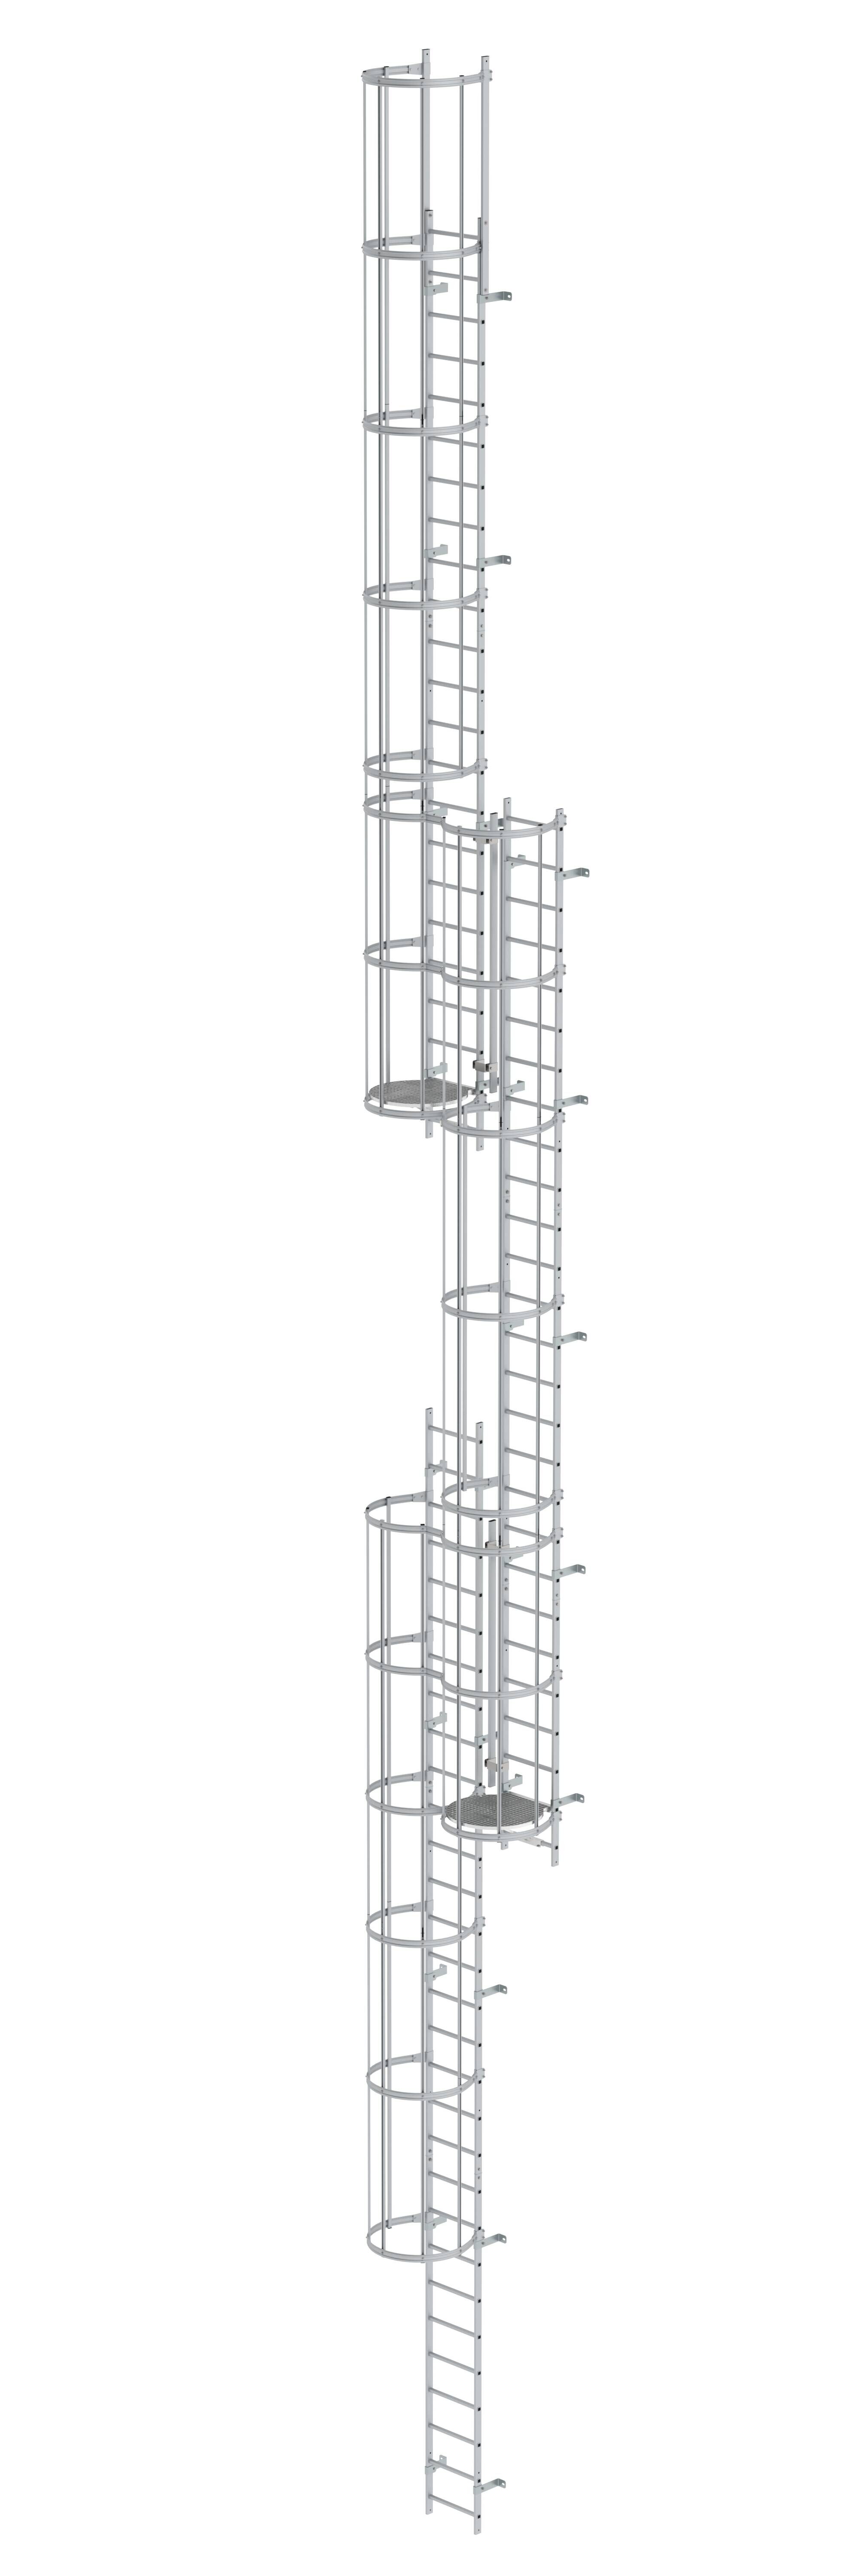 Mehrzügige Steigleiter mit Rückenschutz (Maschinen) Aluminium blank 18,00m